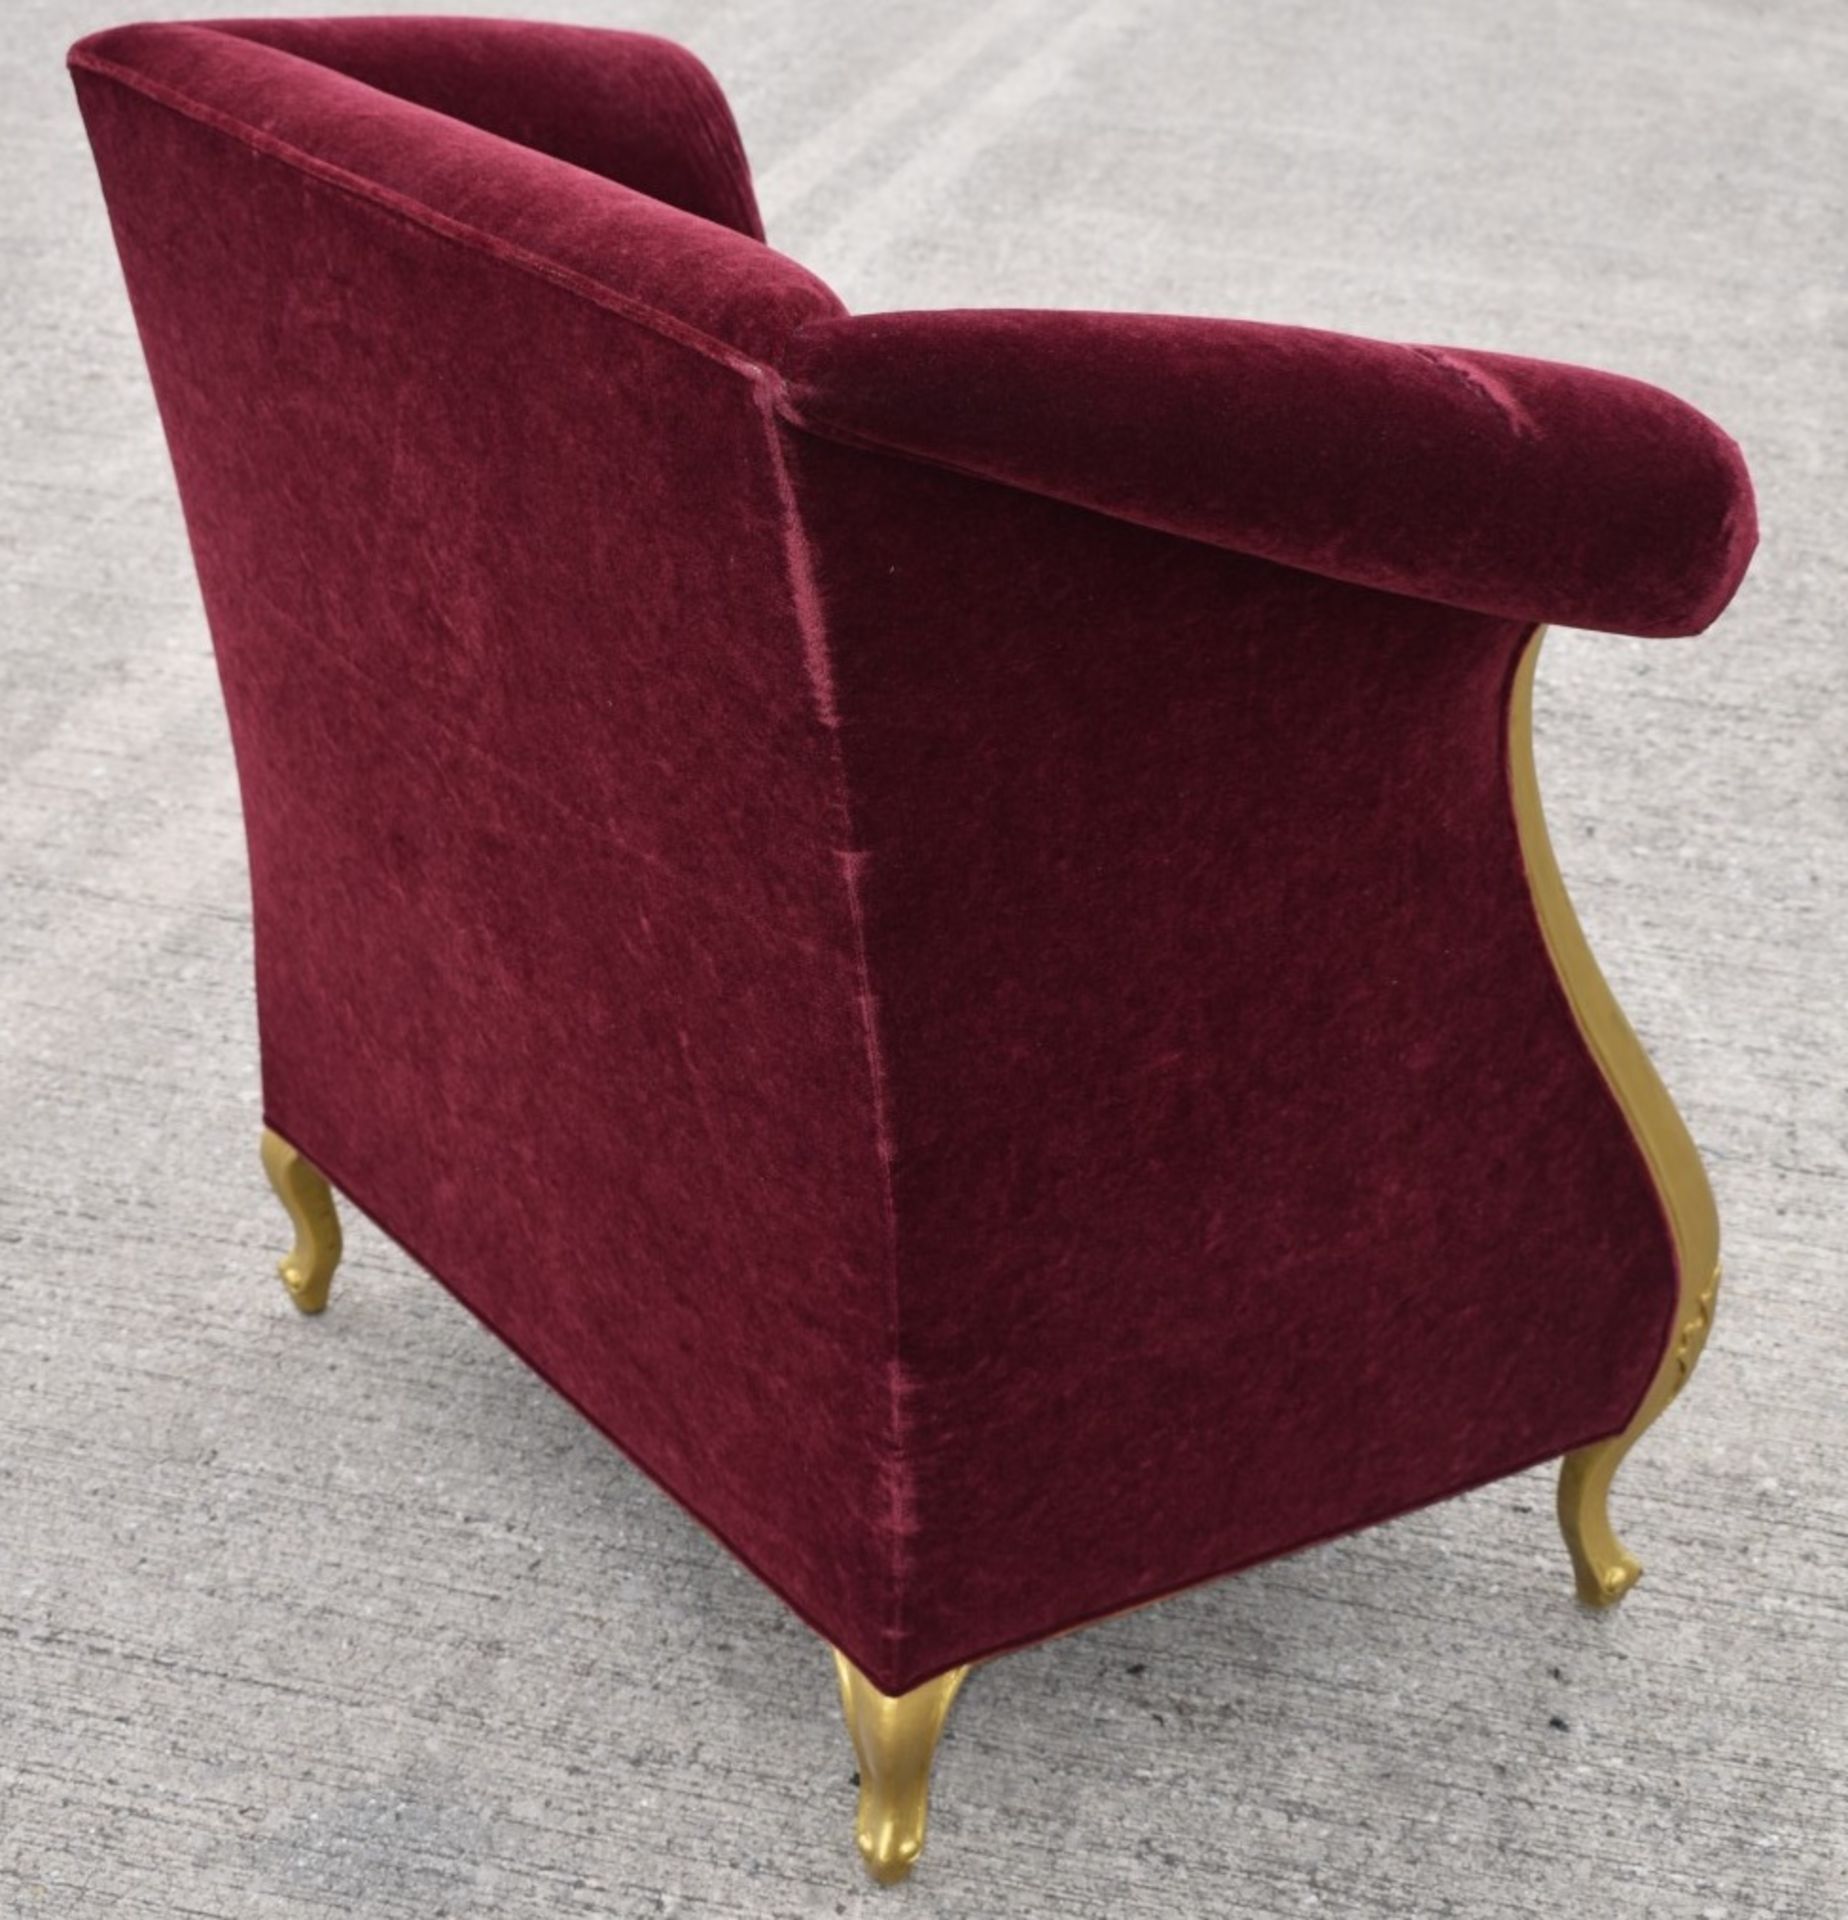 1 x CHRISTOPHER GUY Bespoke Opulent Velvet Upholstered Oversized Armchair - Original Price £4,000 - Image 4 of 9